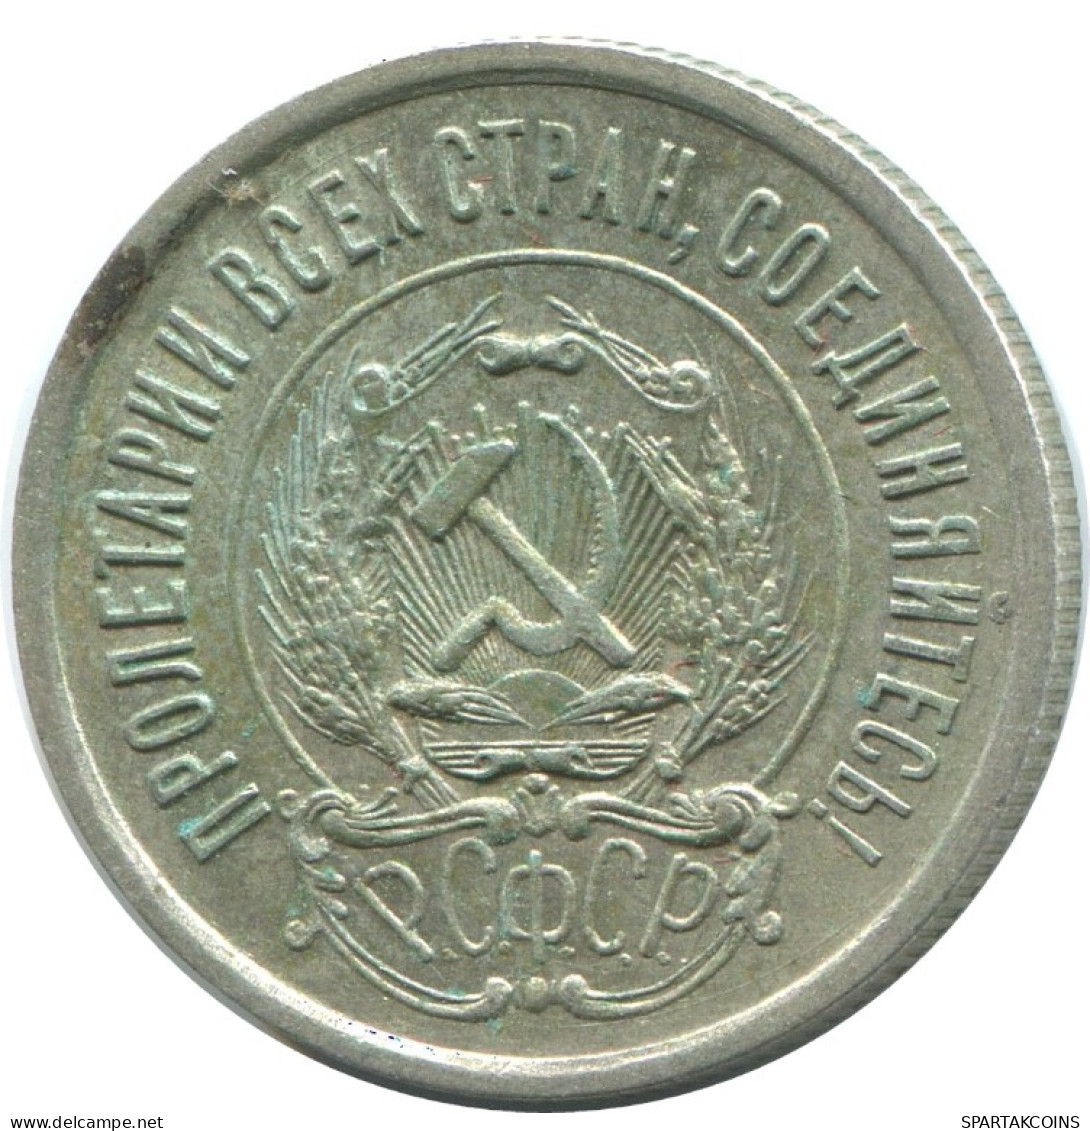 20 KOPEKS 1923 RUSSIA RSFSR SILVER Coin HIGH GRADE #AF418.4.U.A - Russland